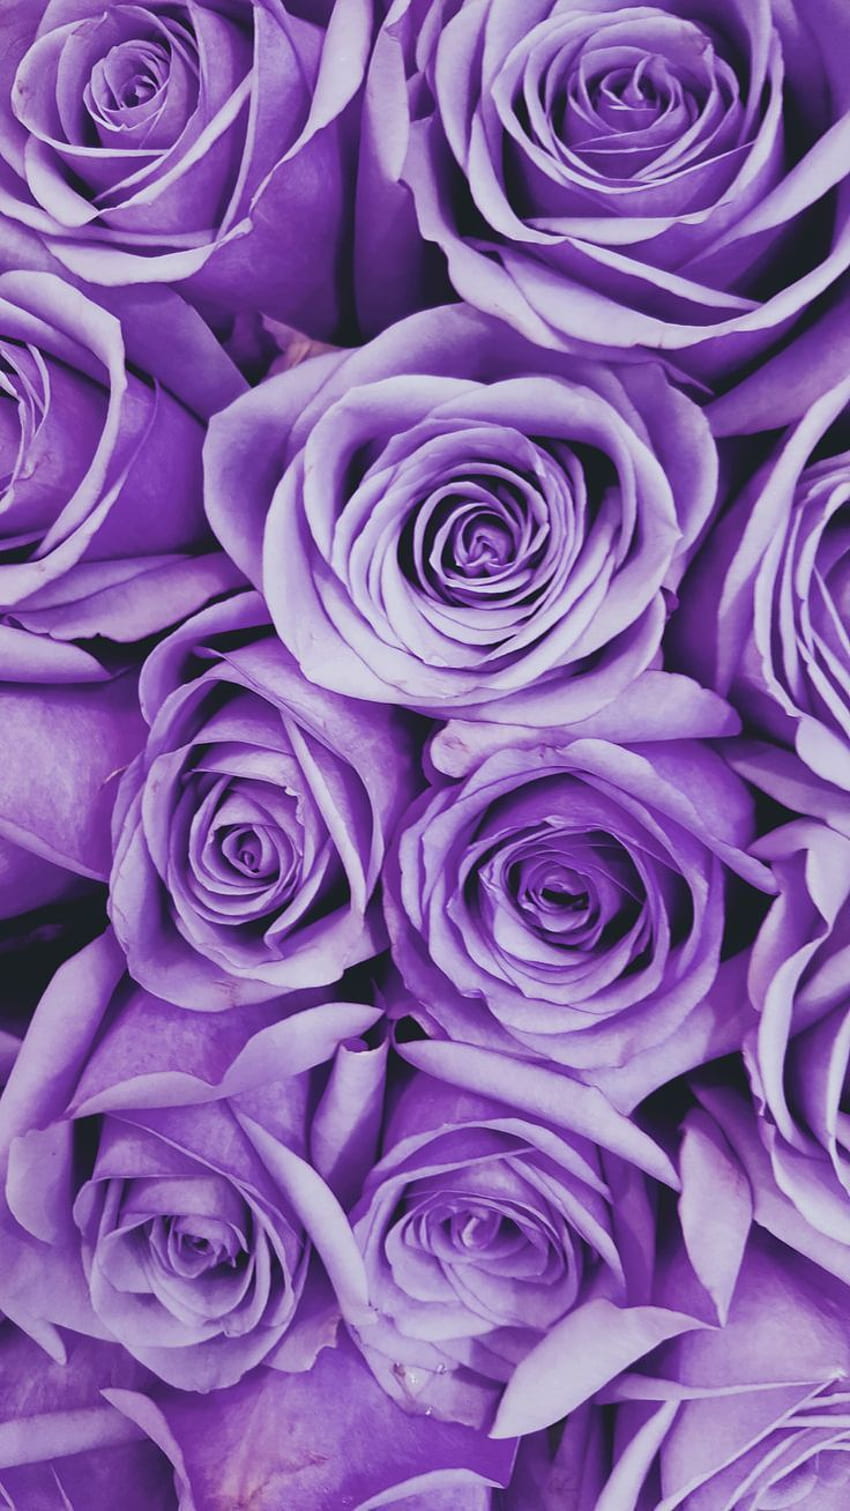 Cuộc sống trở nên đầy màu sắc và tươi tắn hơn với những bông hoa màu tím được tái hiện chân thực trong hình ảnh này. Đó là những hình ảnh tuyệt đẹp về các loại purple flowers, giúp bạn cảm thấy yên bình và hạnh phúc.